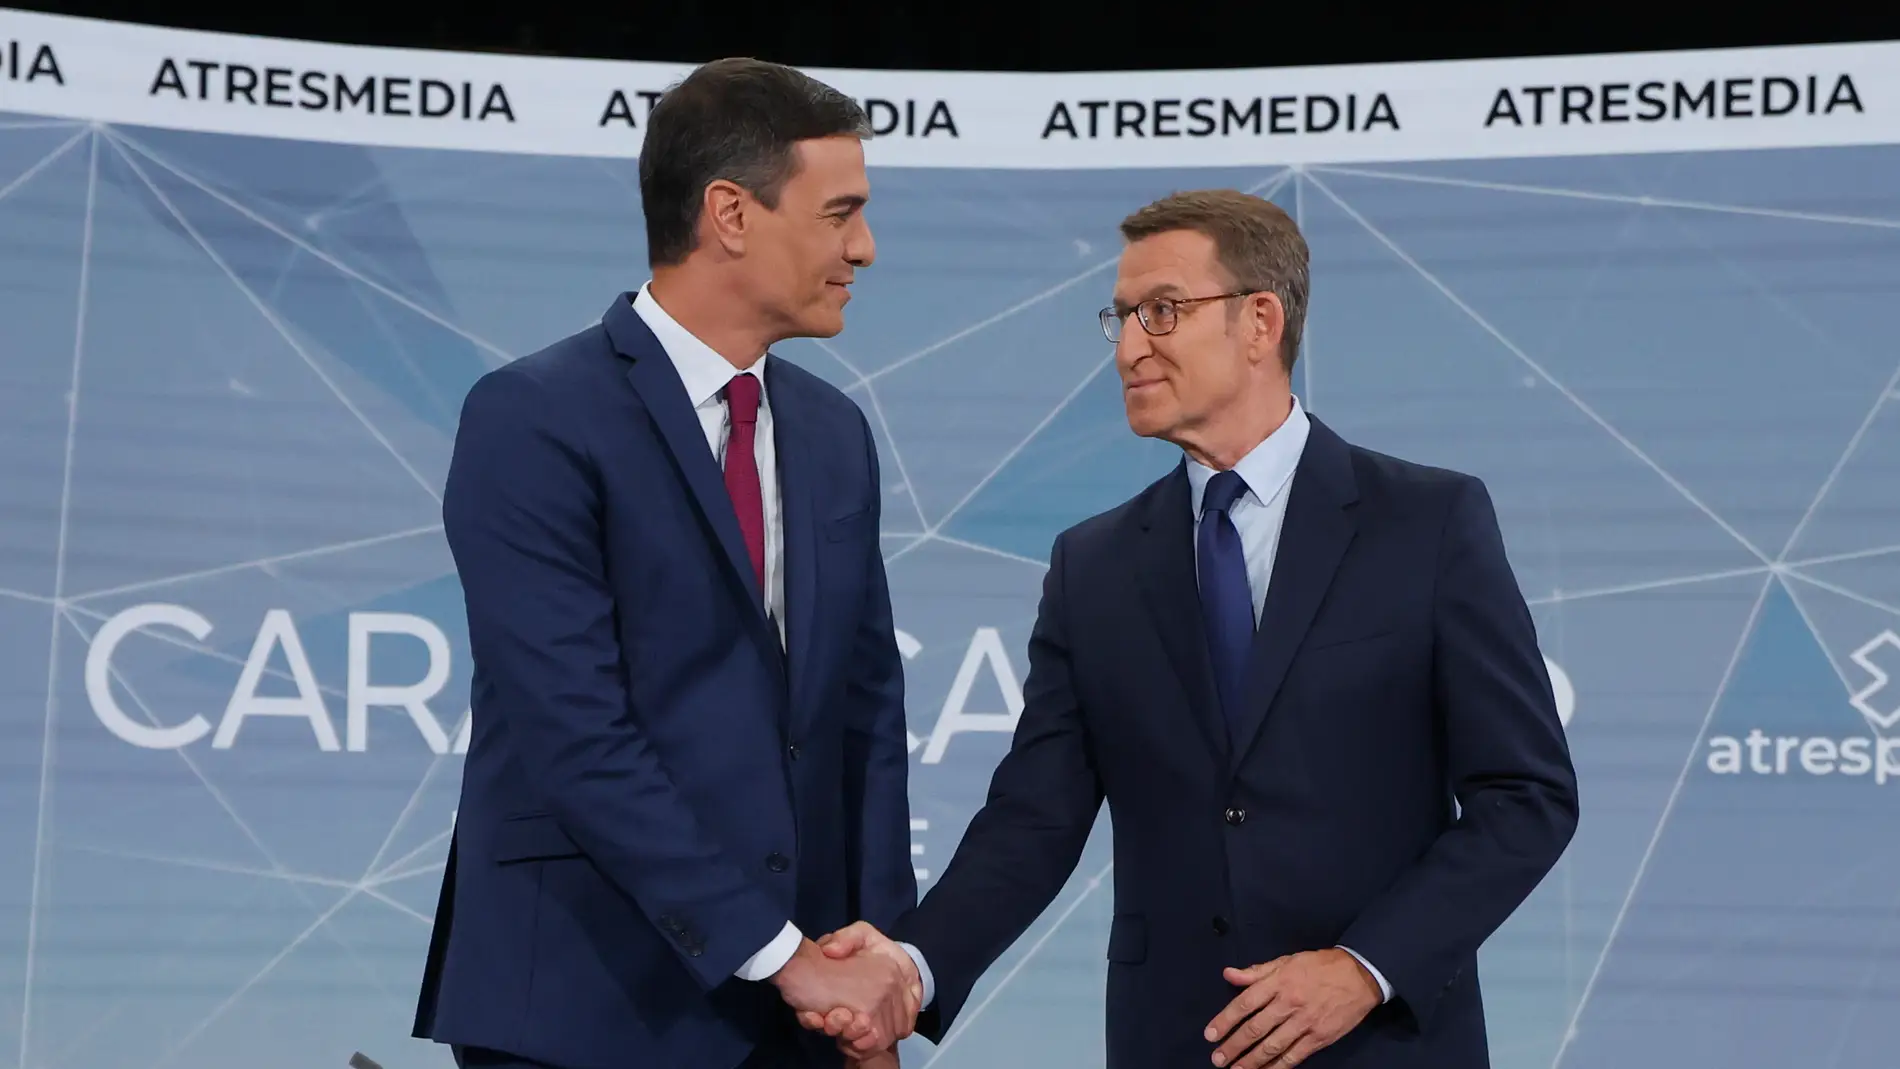 Pedro Sánchez y Alberto Núñez Feijóo se dan la mano durante el debate cara a cara en Atresmedia